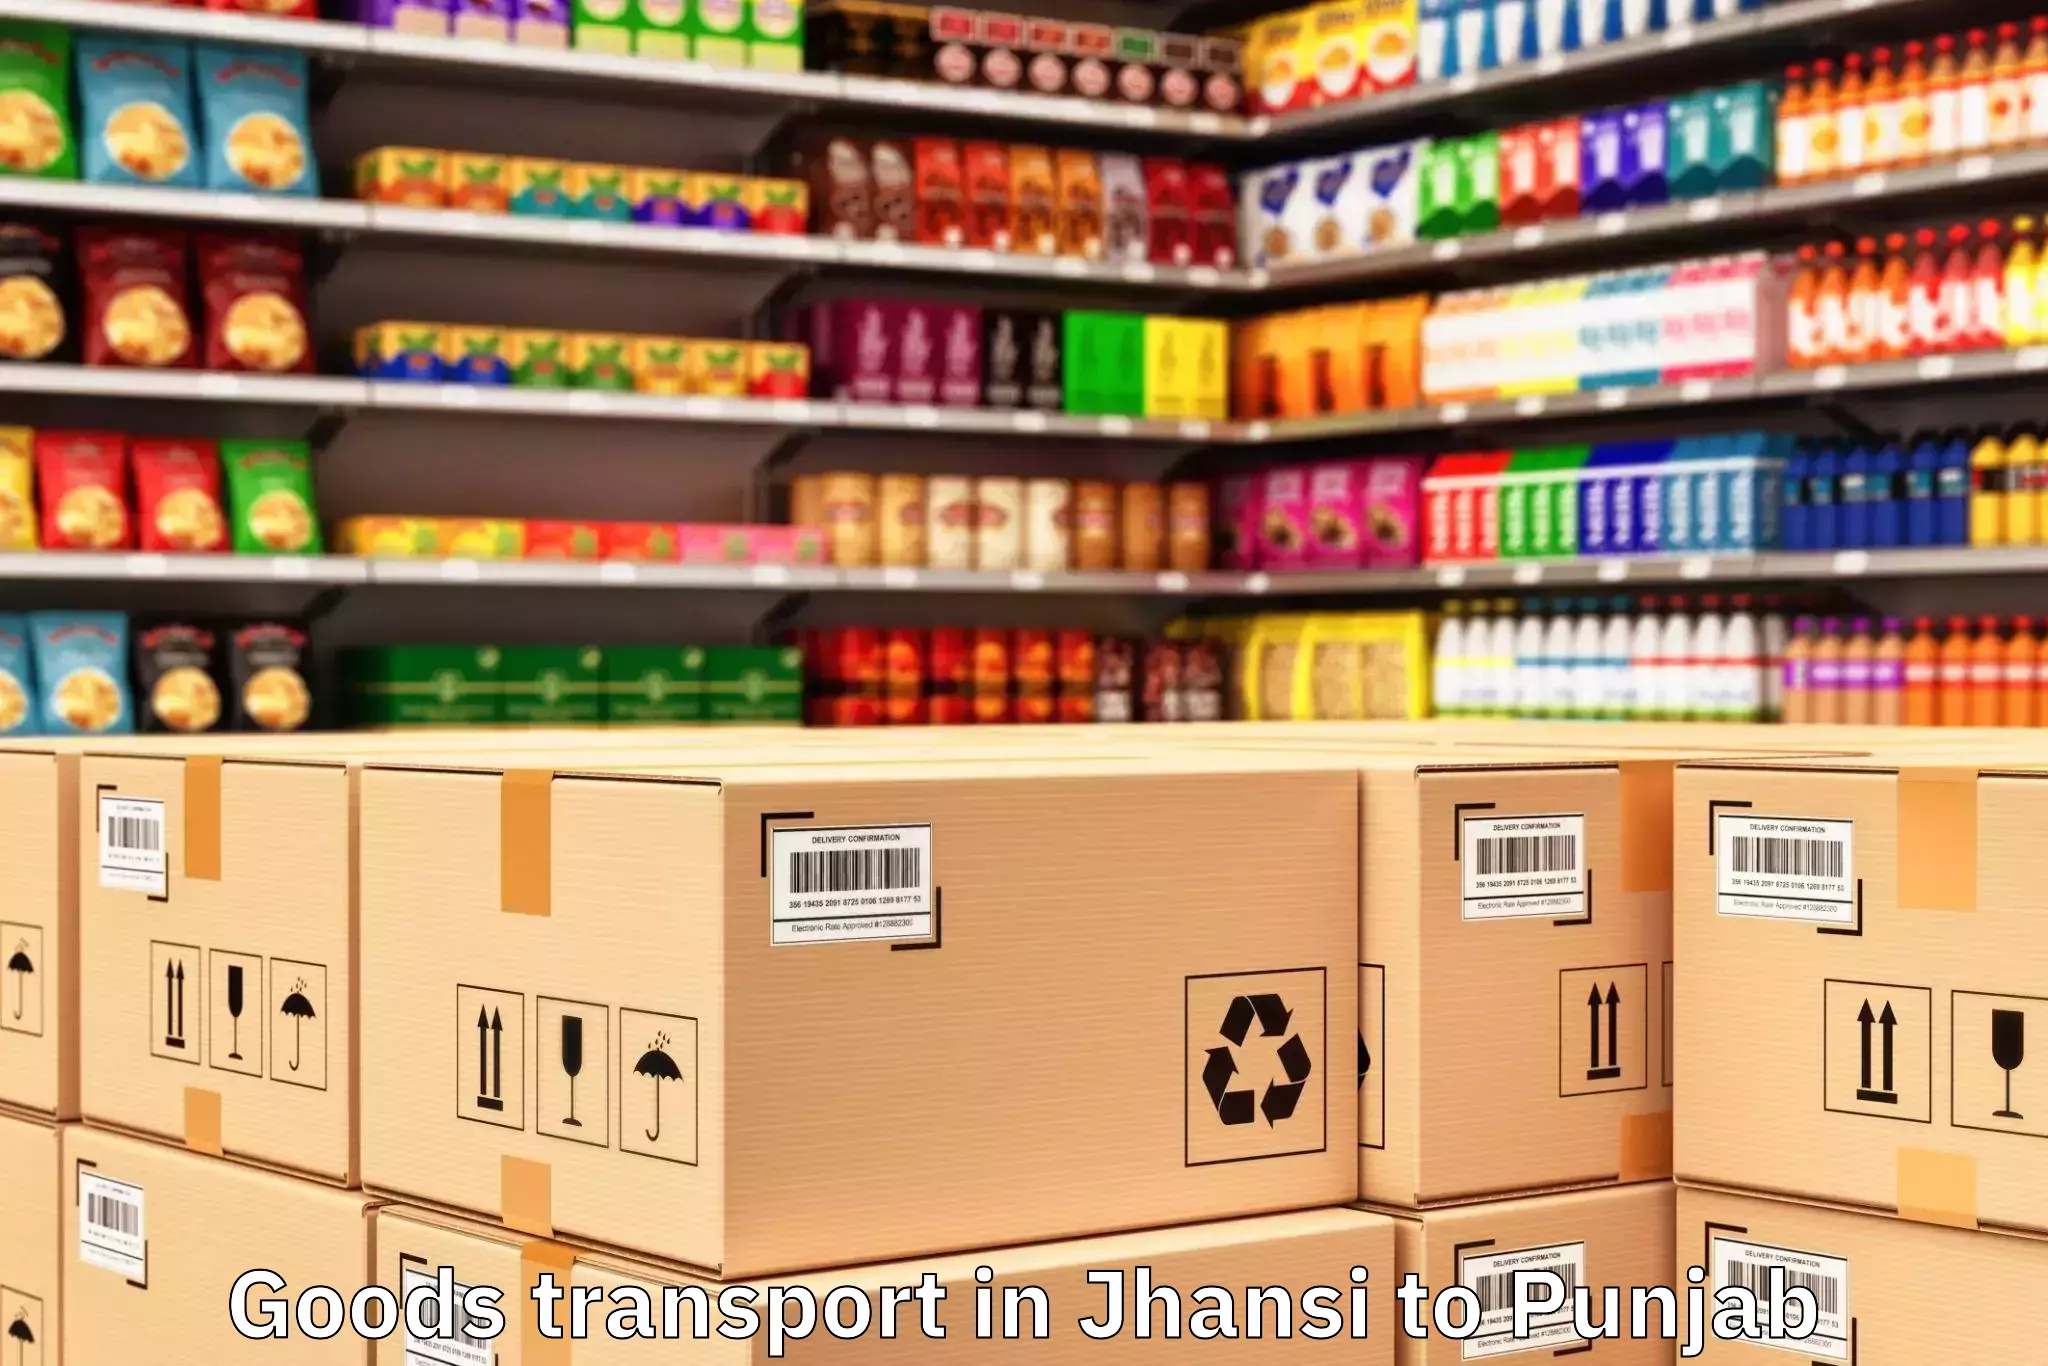 Professional Jhansi to Punjab Goods Transport